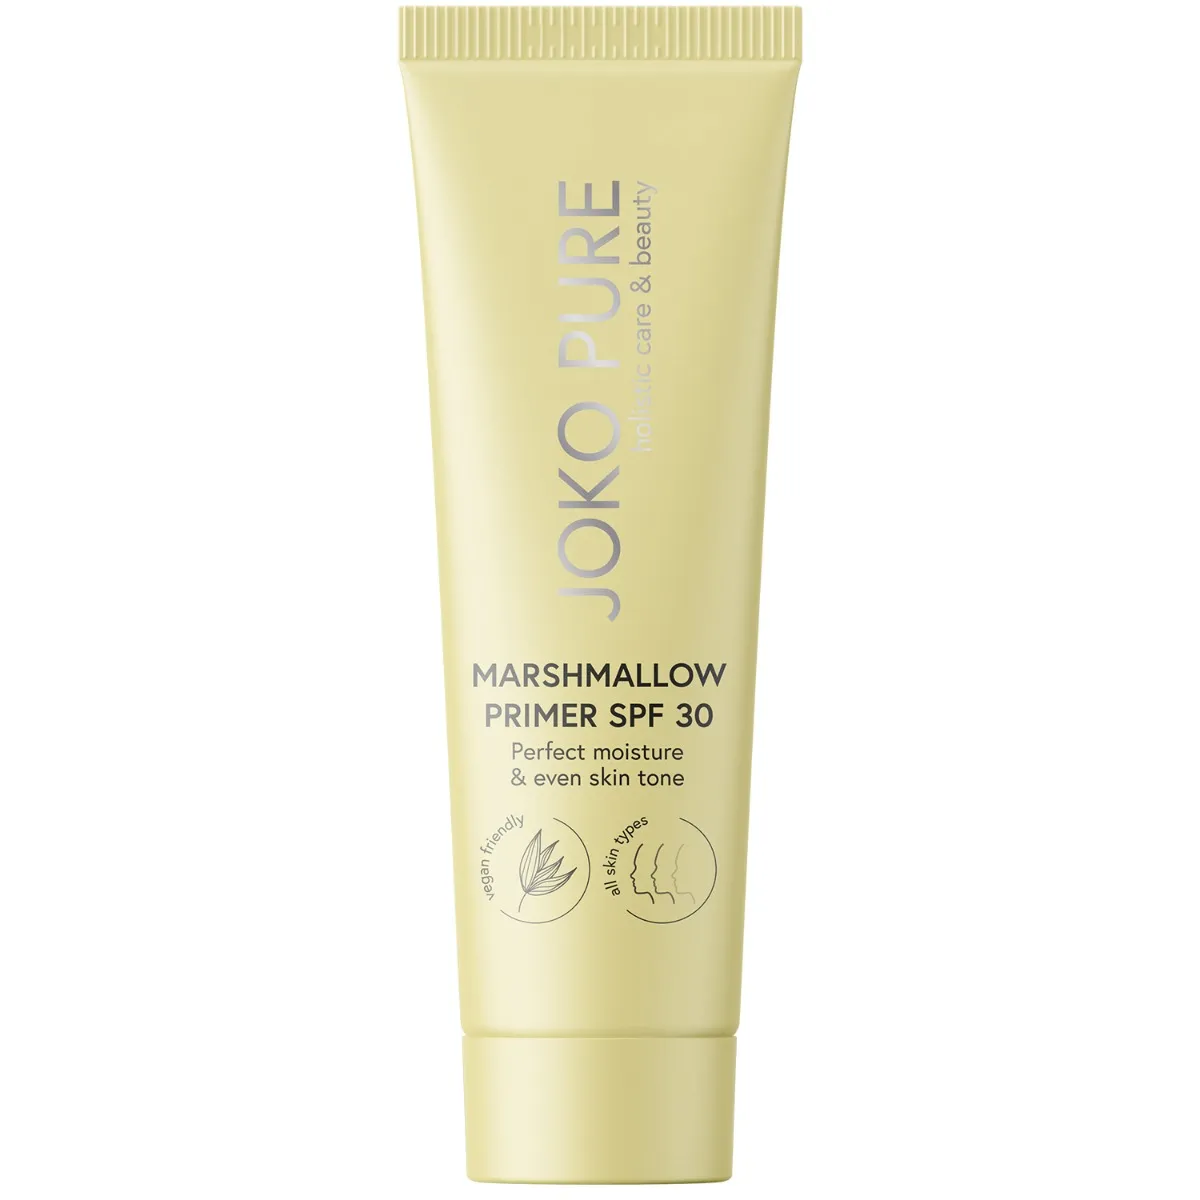 JOKO PURE holistic care & beauty Marshmallow Primer SPF 30 baza pod makijaż z filtrami przeciwsłonecznymi, 30 ml